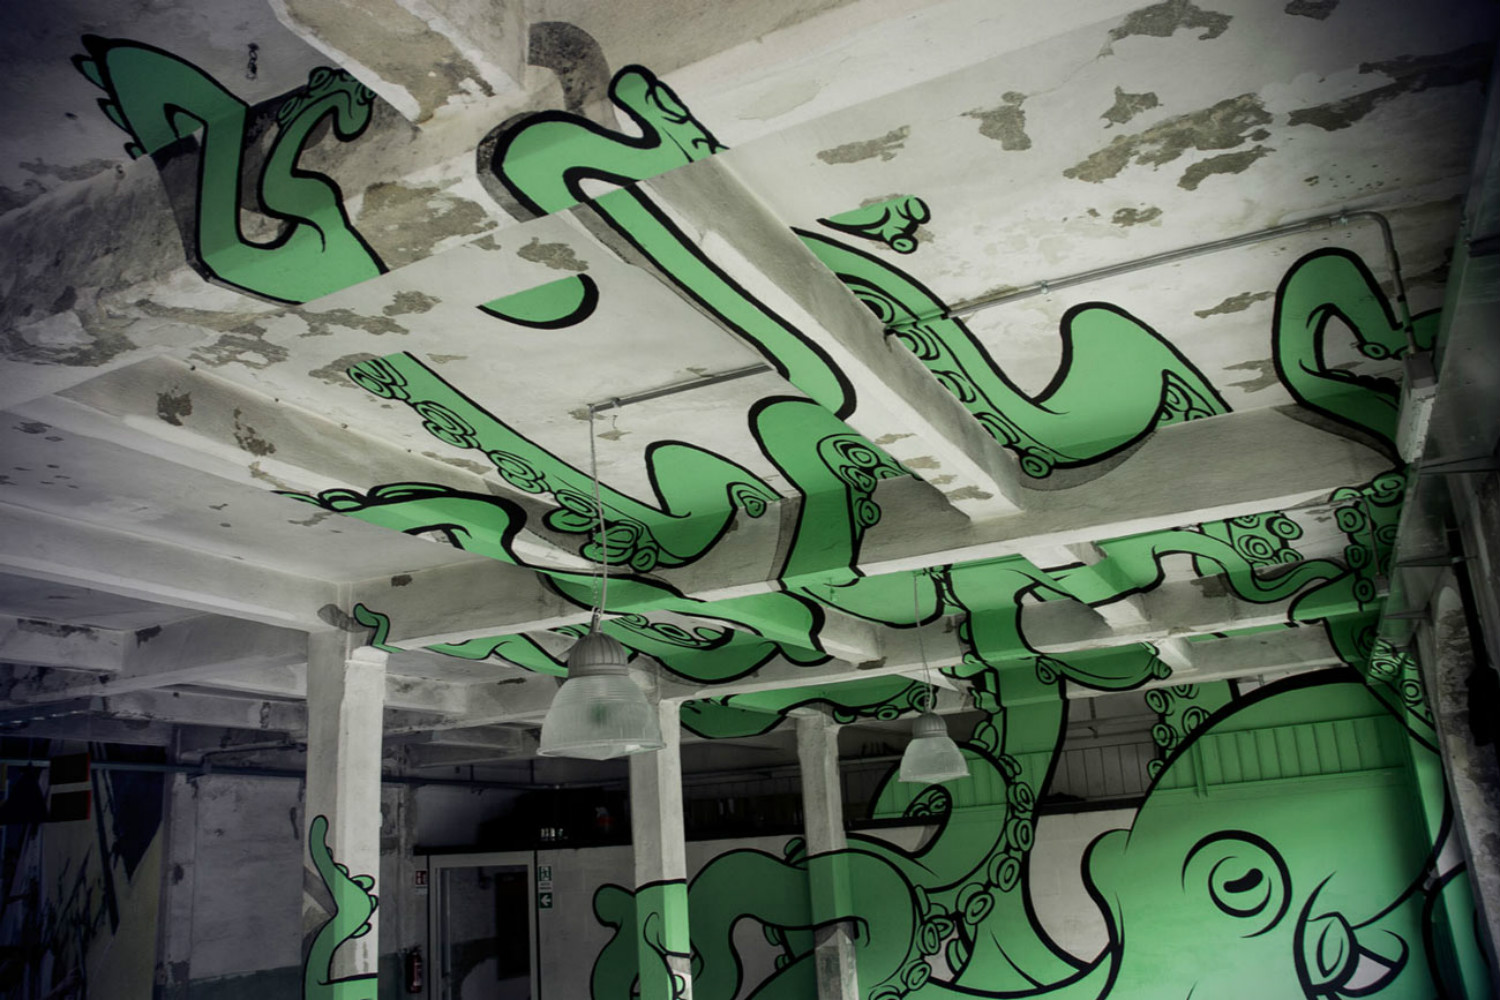 truly design anamorphic graffiti octopus green concrete space